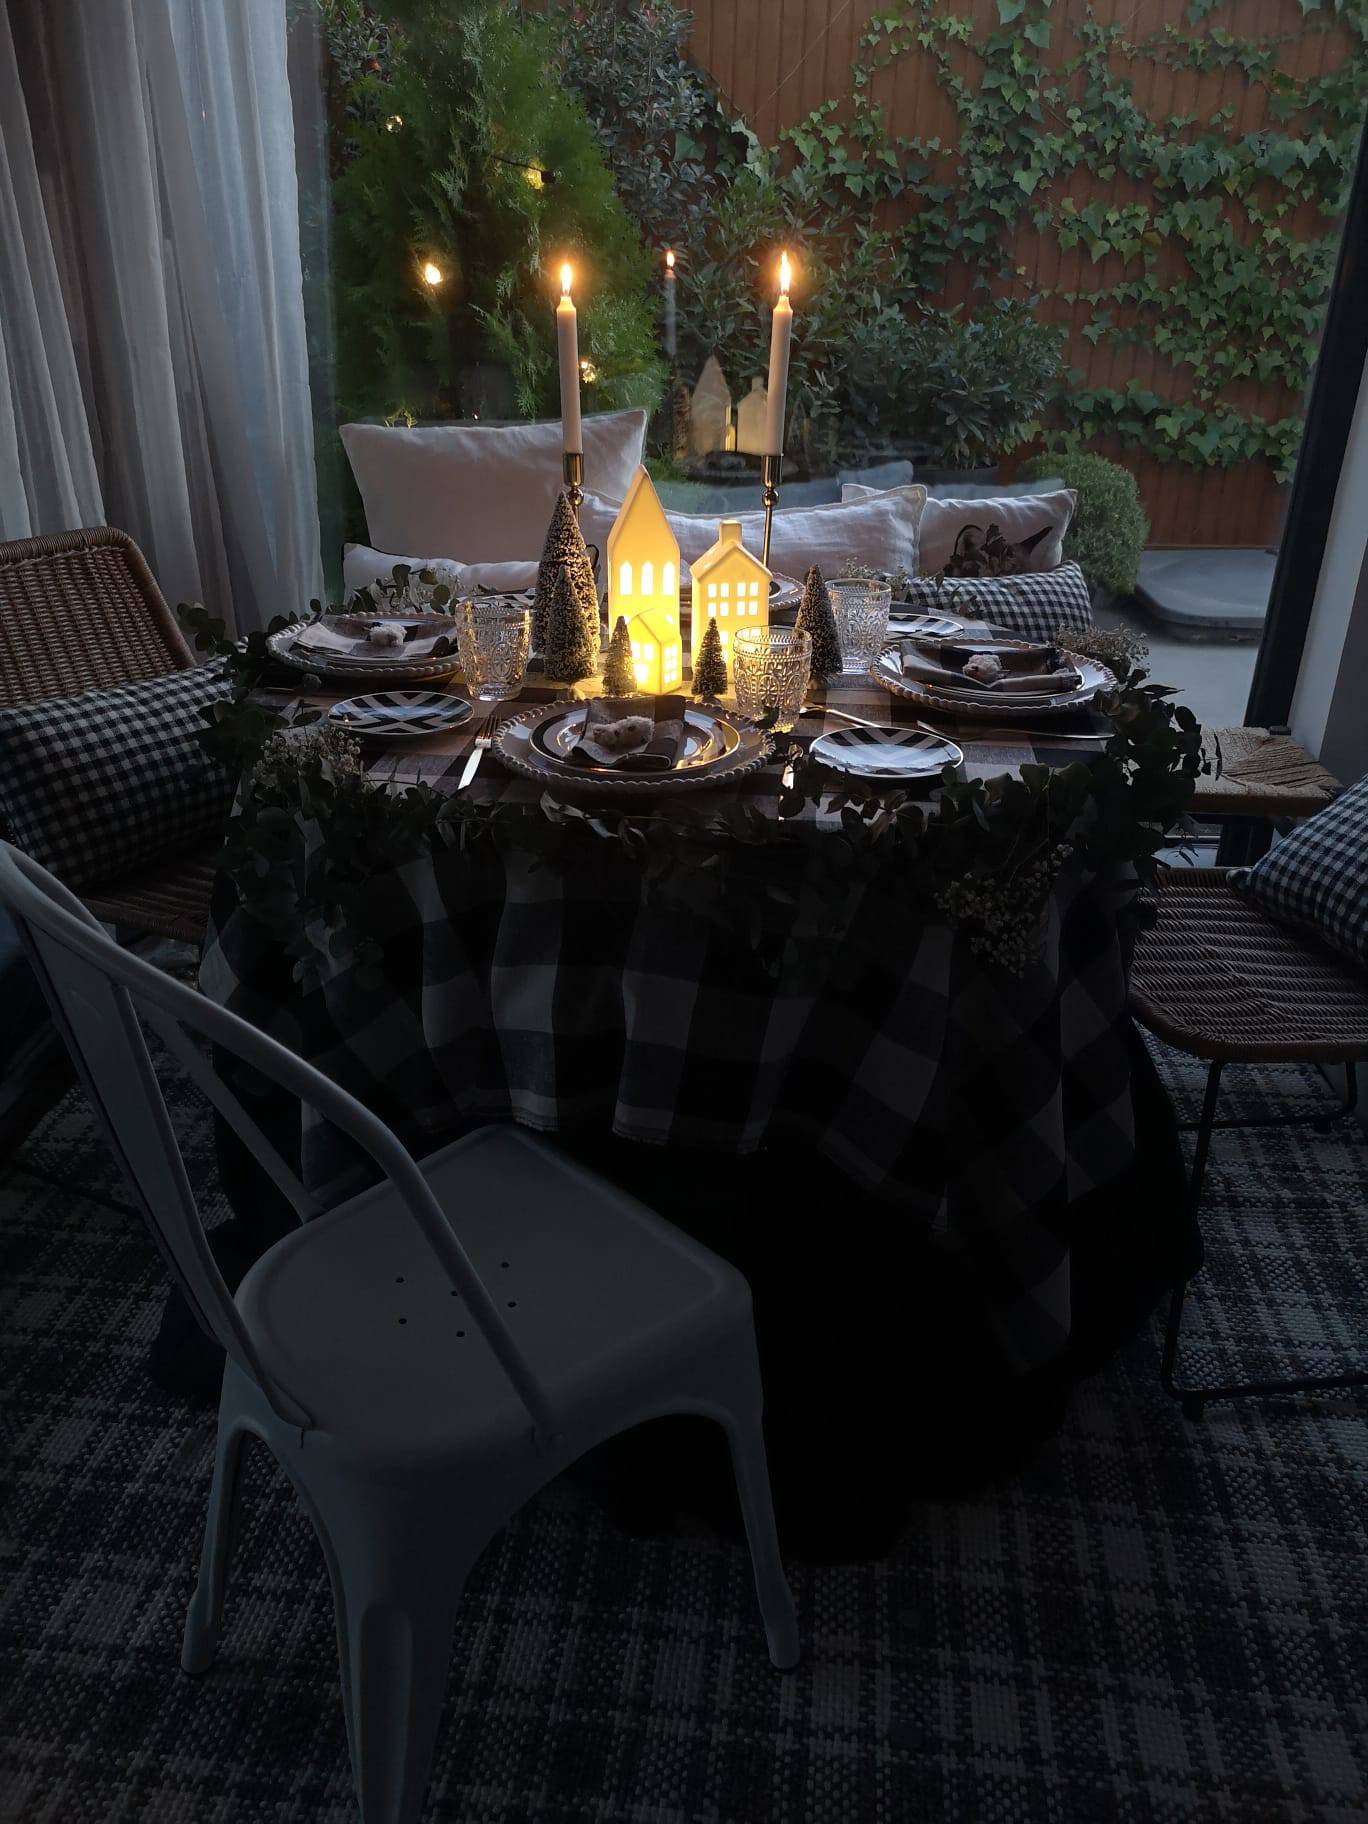 Comedor de noche con mesa navideña con mantel de cuadro, velas y lámparas de mesa en forma de casita de IKEA.